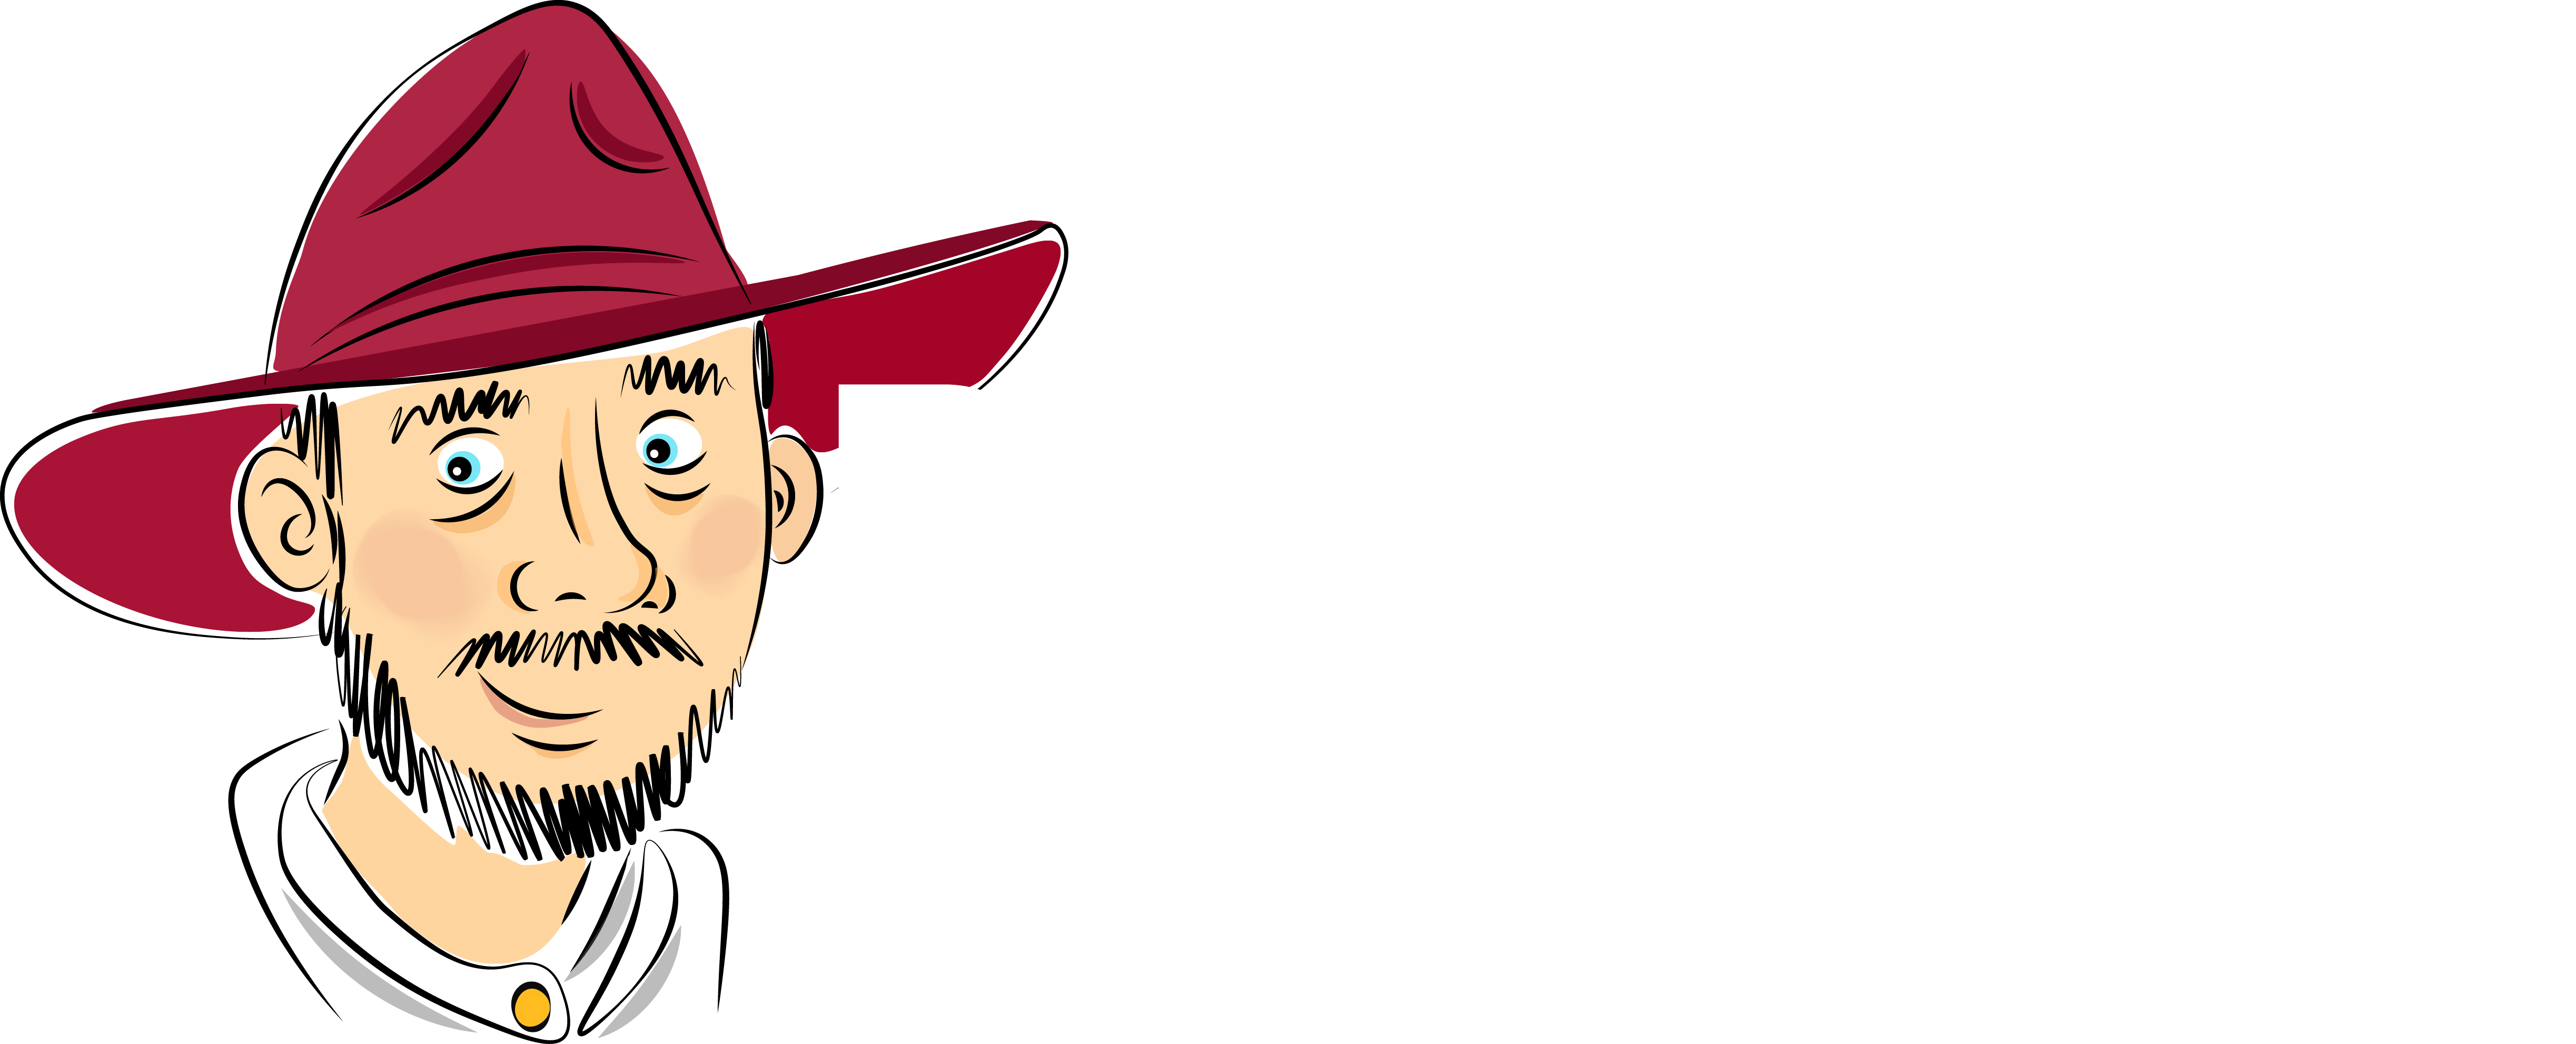 Billy Tong